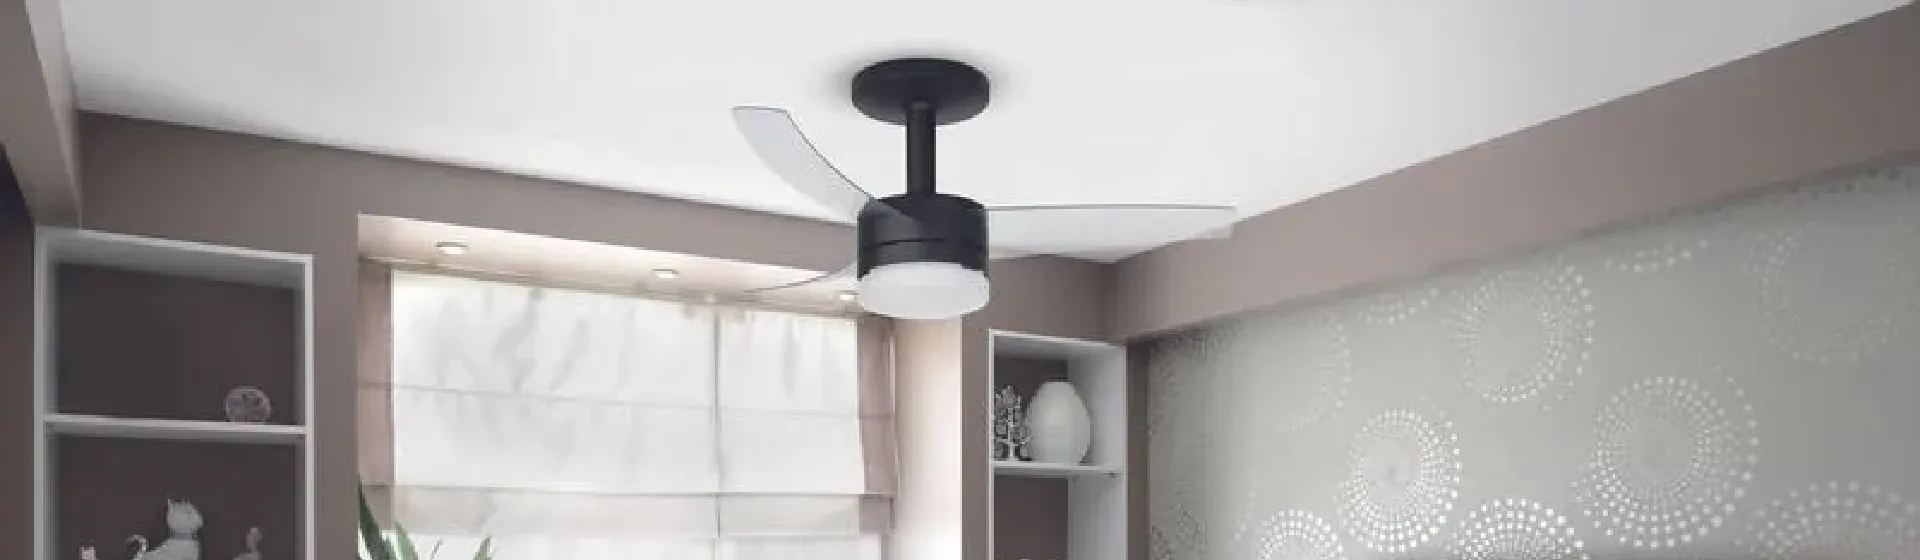 O ventilador de teto Arno Ultimate é bom? Confira a análise do produto